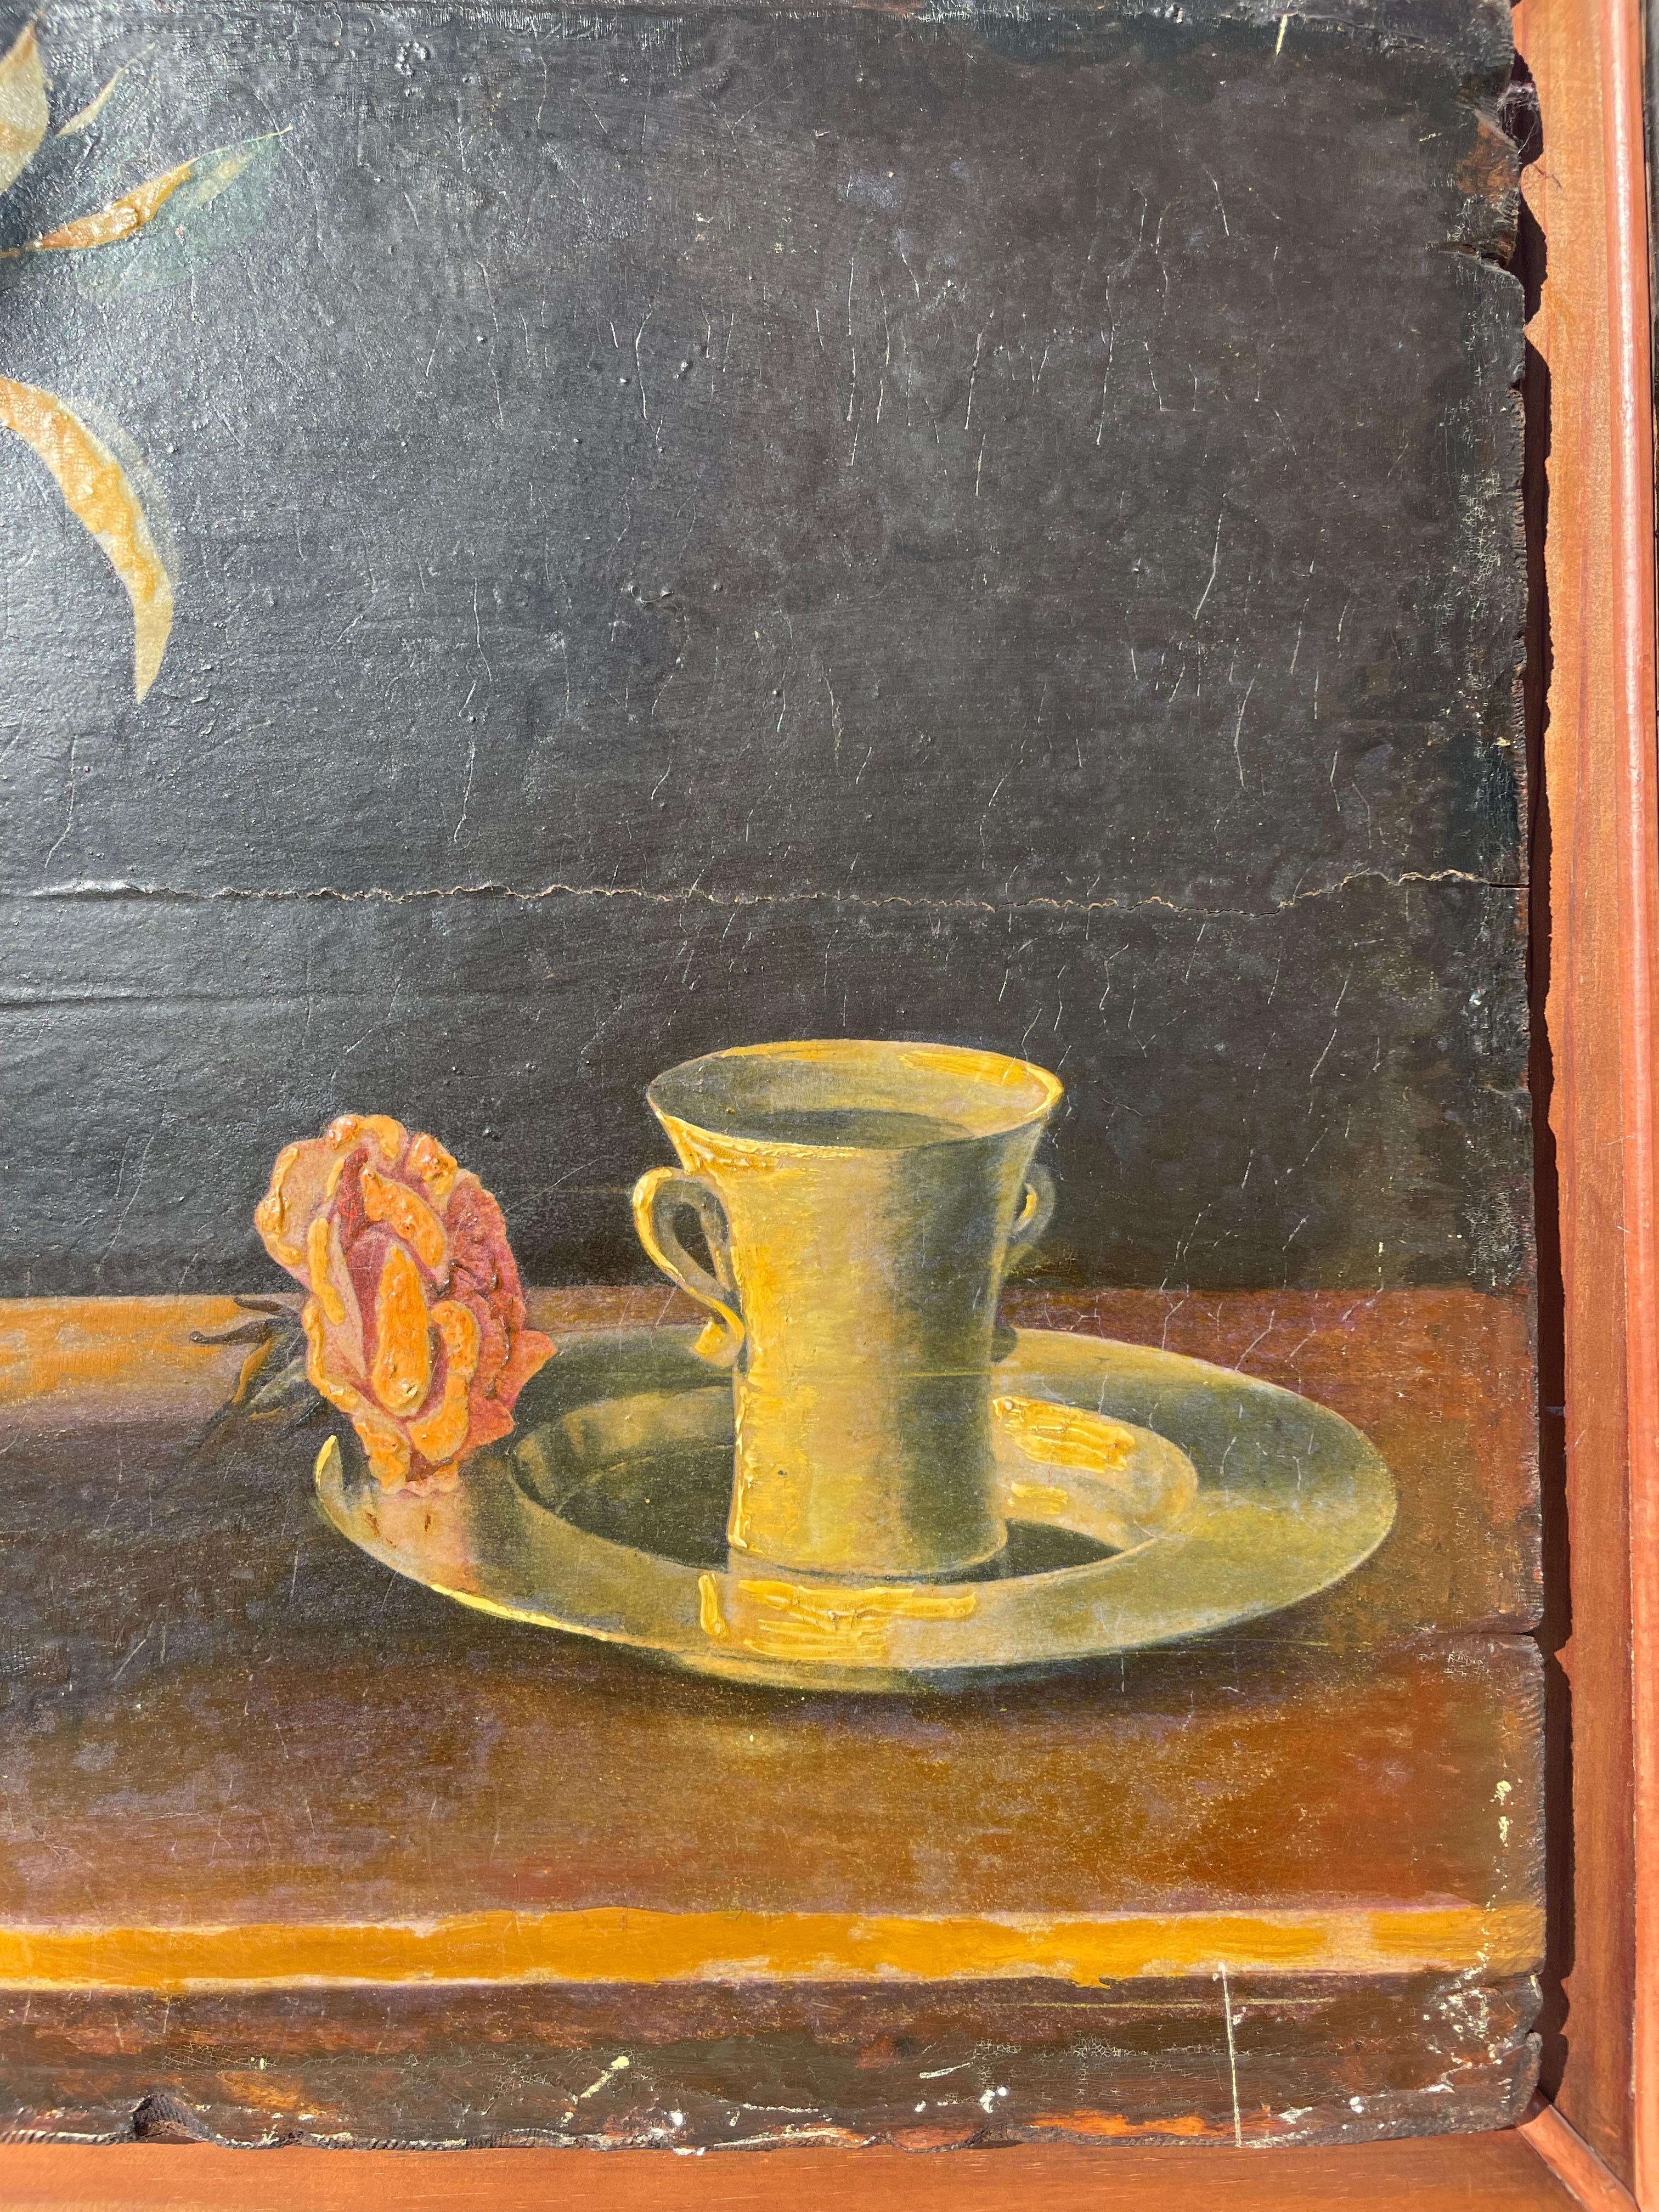 Stilleben auf Holzplatte gemalt. Auf einem Tisch in der Mitte ein Weidenkorb mit Orangen und Orangenblüten, links von der Komposition eine silberne Schale mit vier großen Zitronen, auf der linken Seite des Gemäldes eine Tasse mit zwei Hanses, die